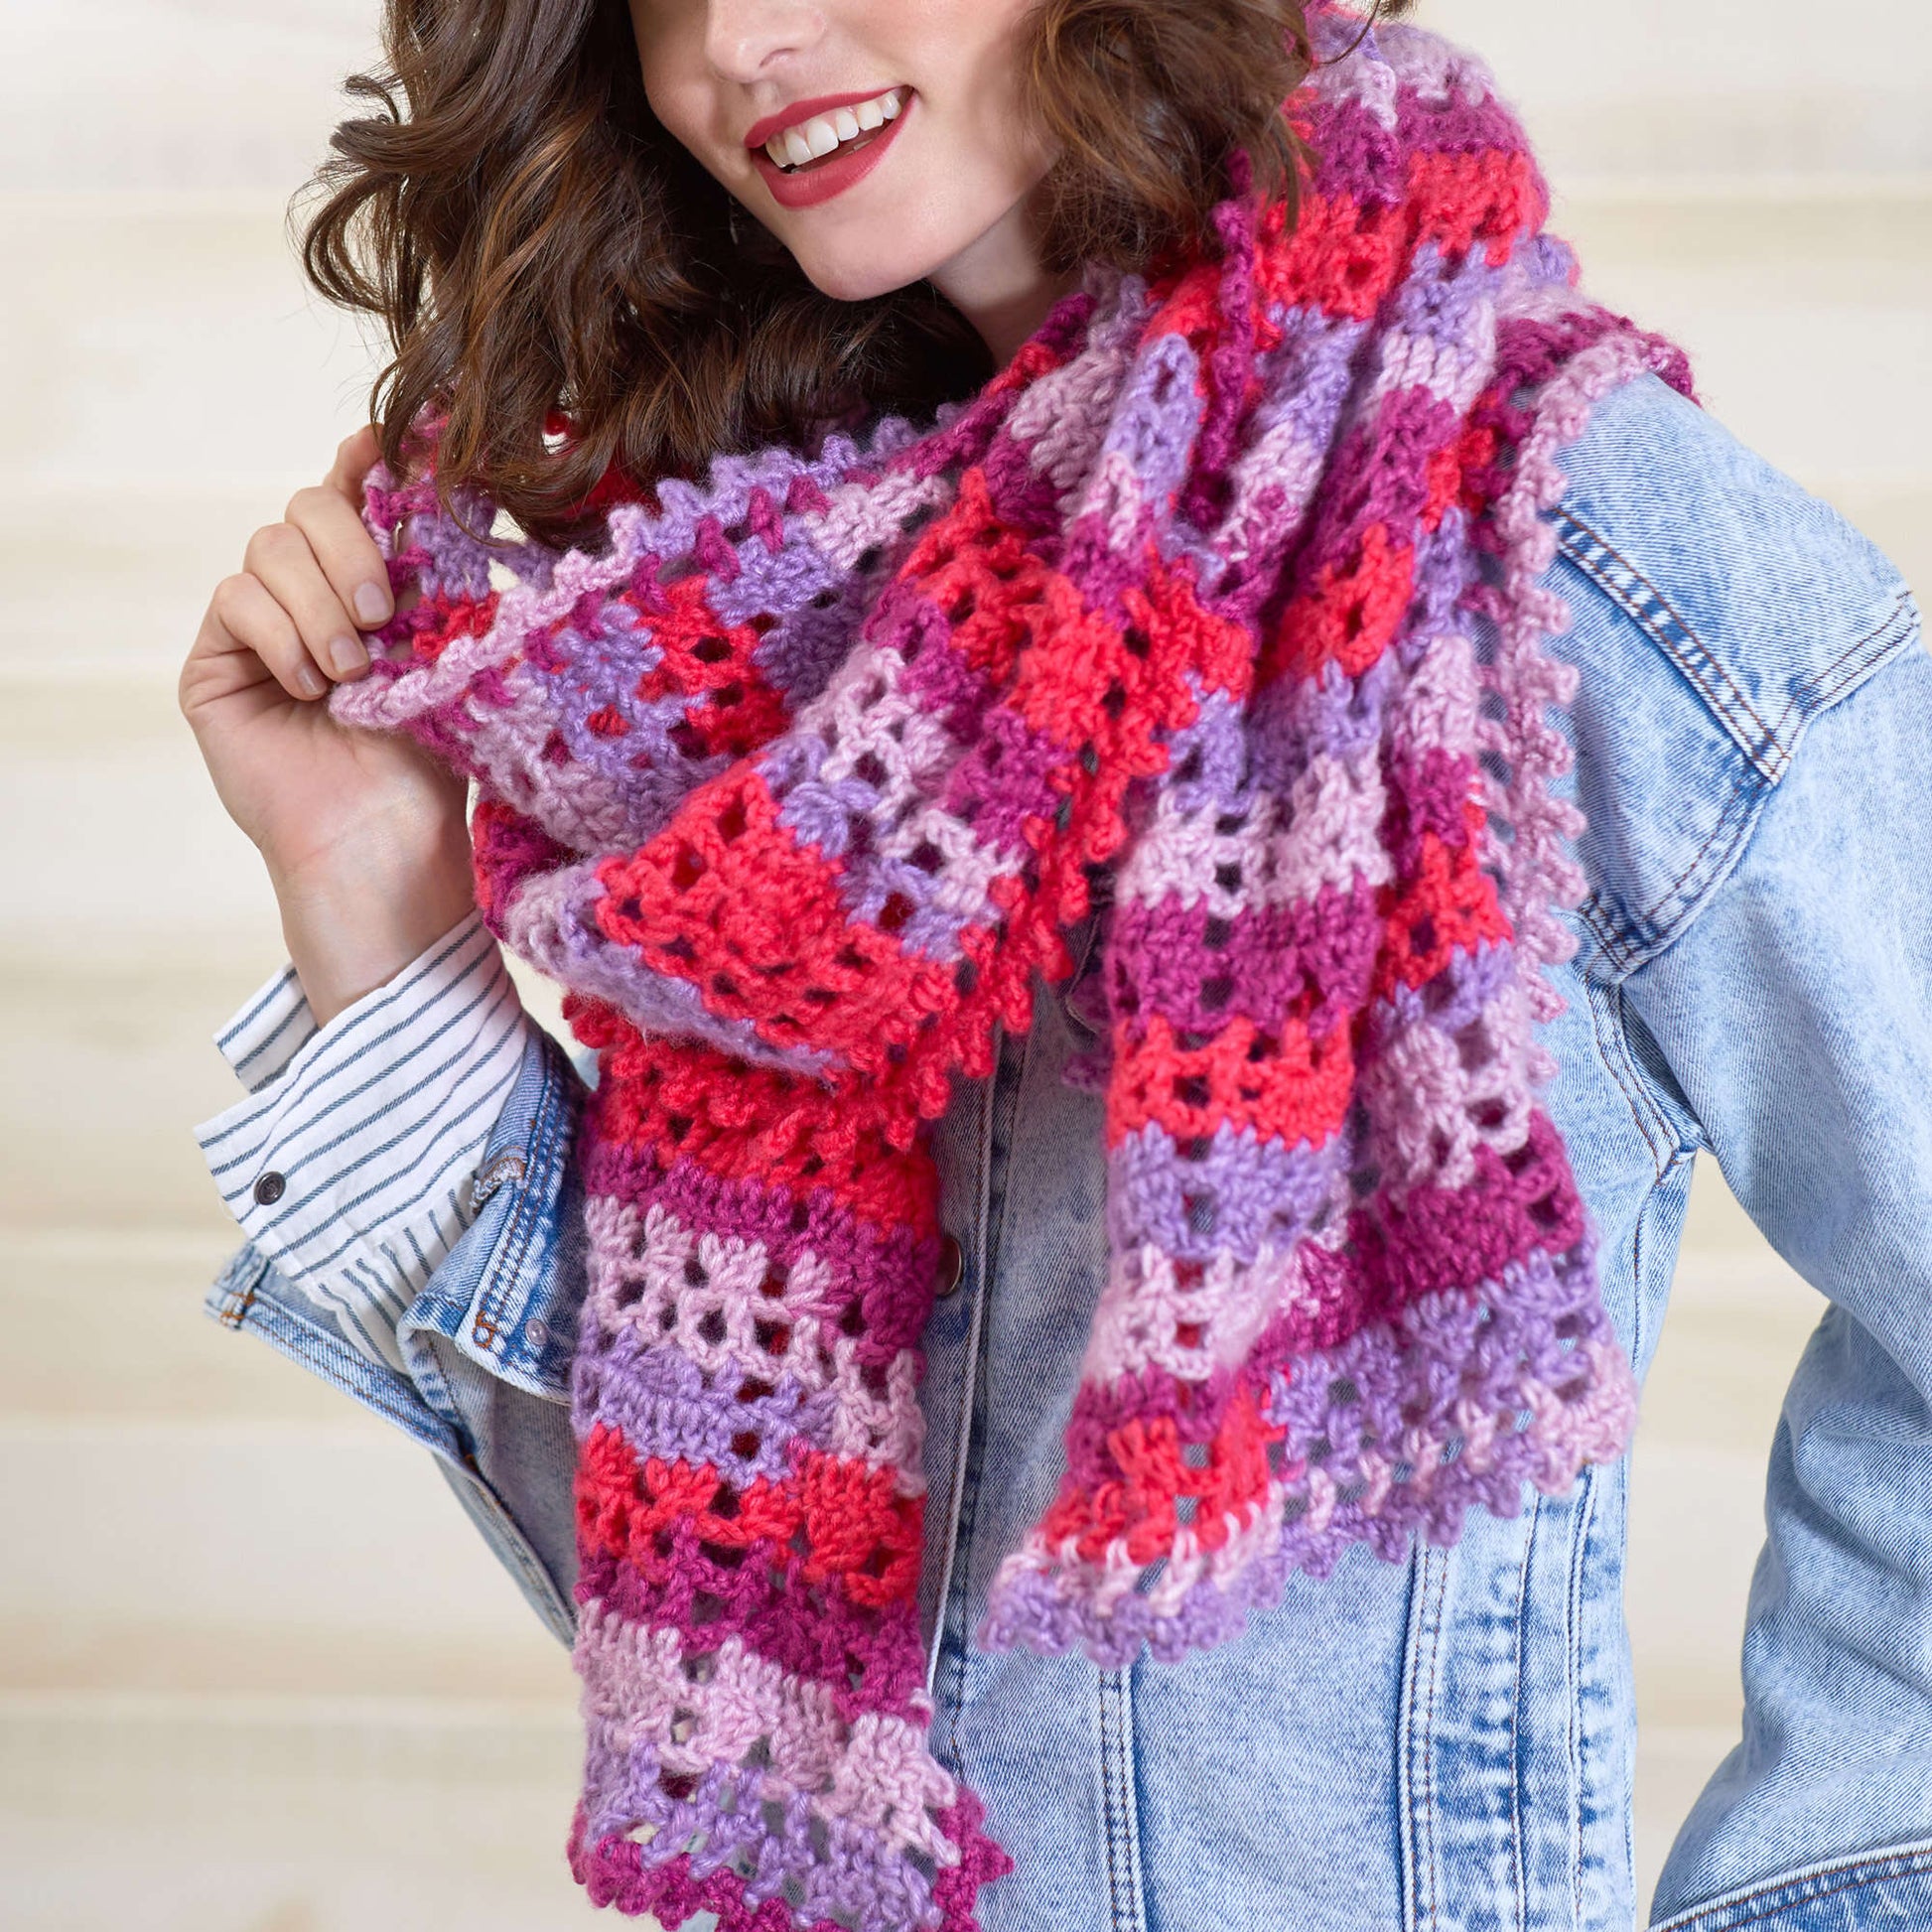 Free Red Heart Heartwarming Crochet Scarf by Susan Heyn Pattern